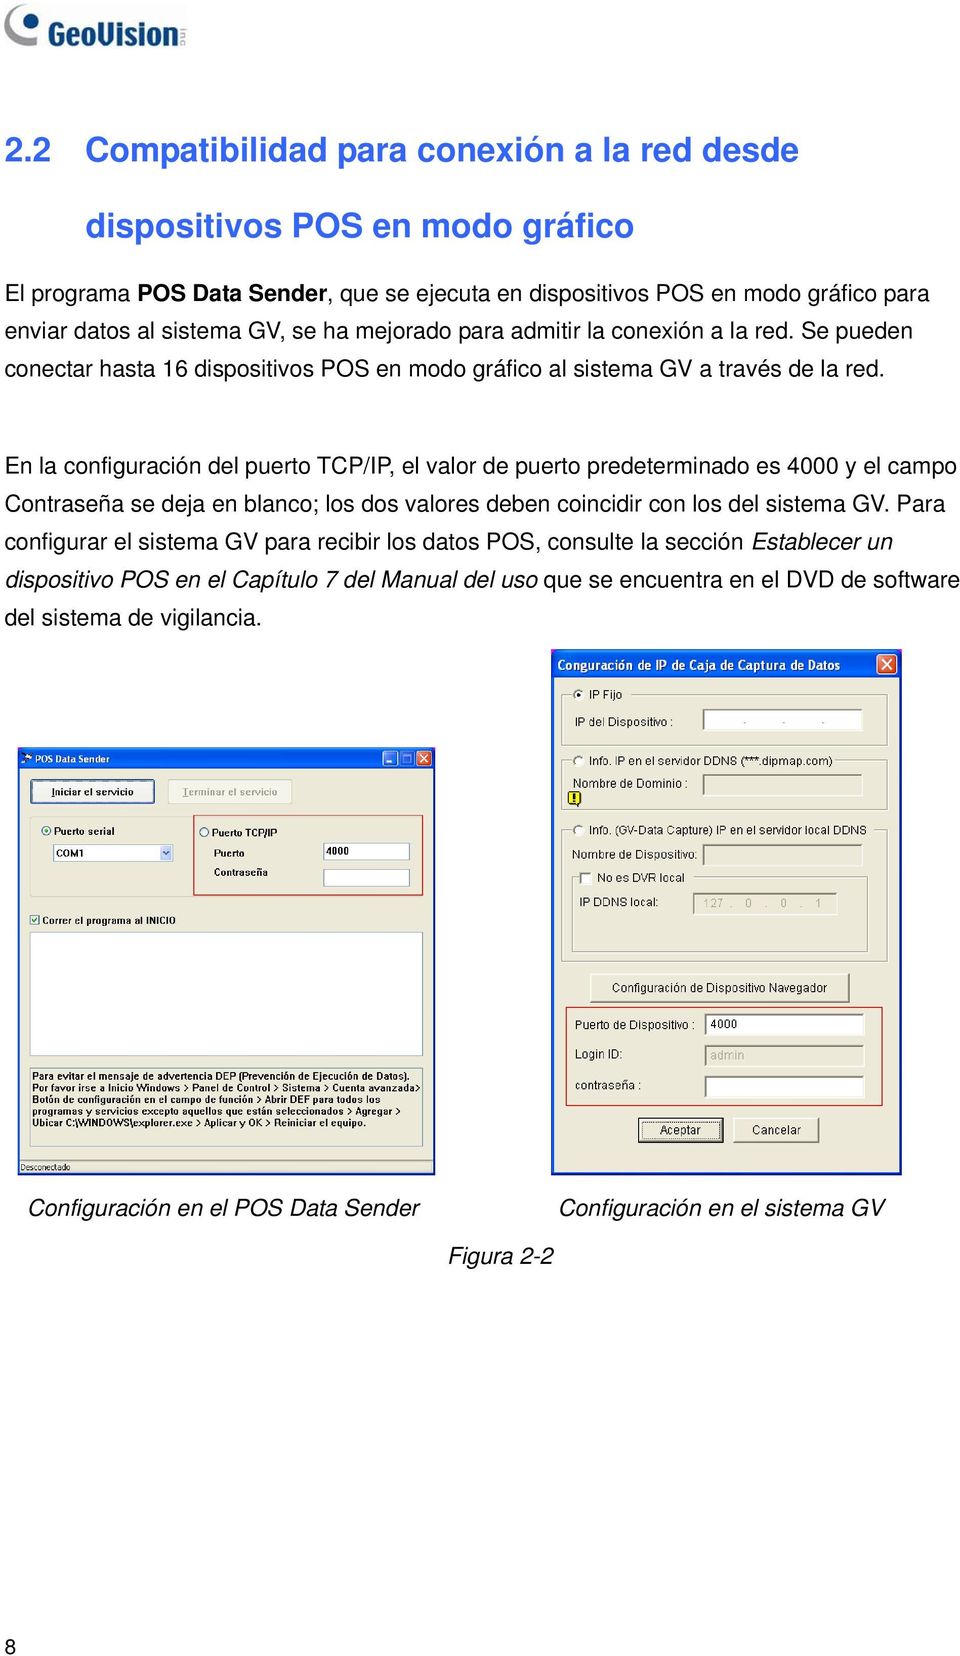 En la configuración del puerto TCP/IP, el valor de puerto predeterminado es 4000 y el campo Contraseña se deja en blanco; los dos valores deben coincidir con los del sistema GV.